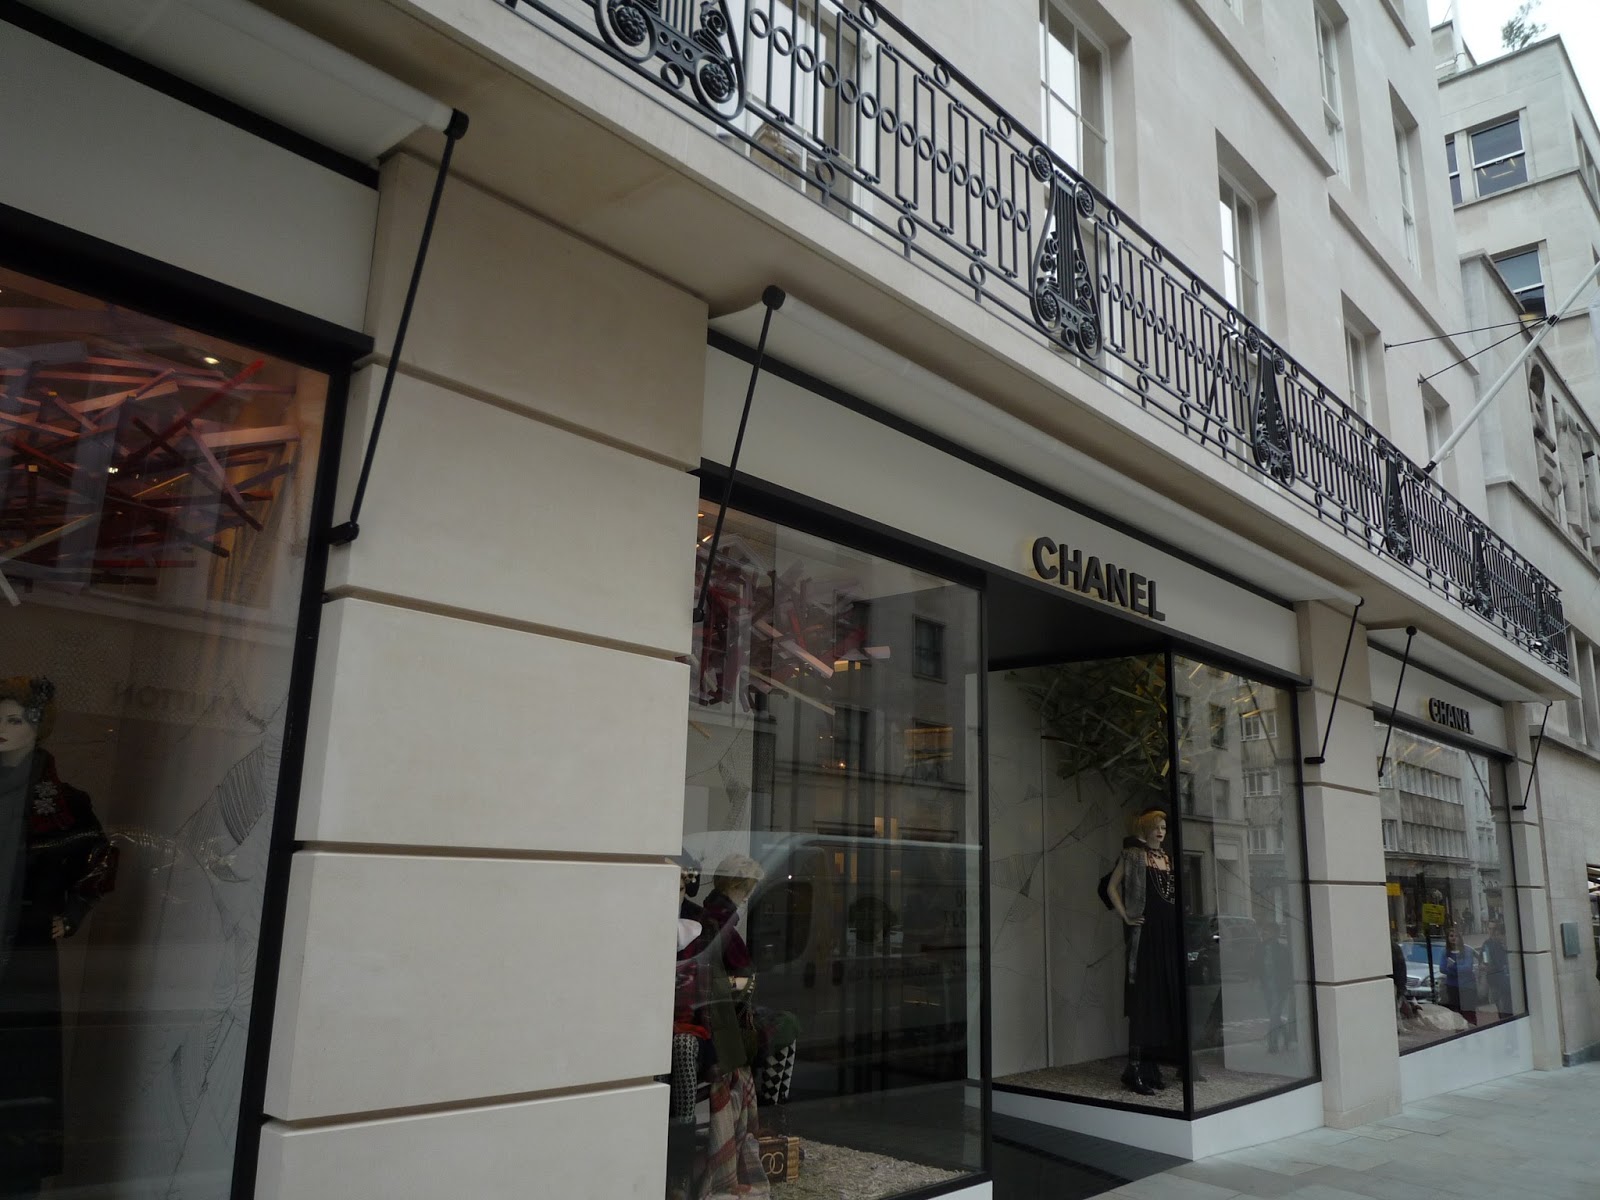 Coulda Shoulda Woulda: 26 Old Bond Street - The biggest Chanel